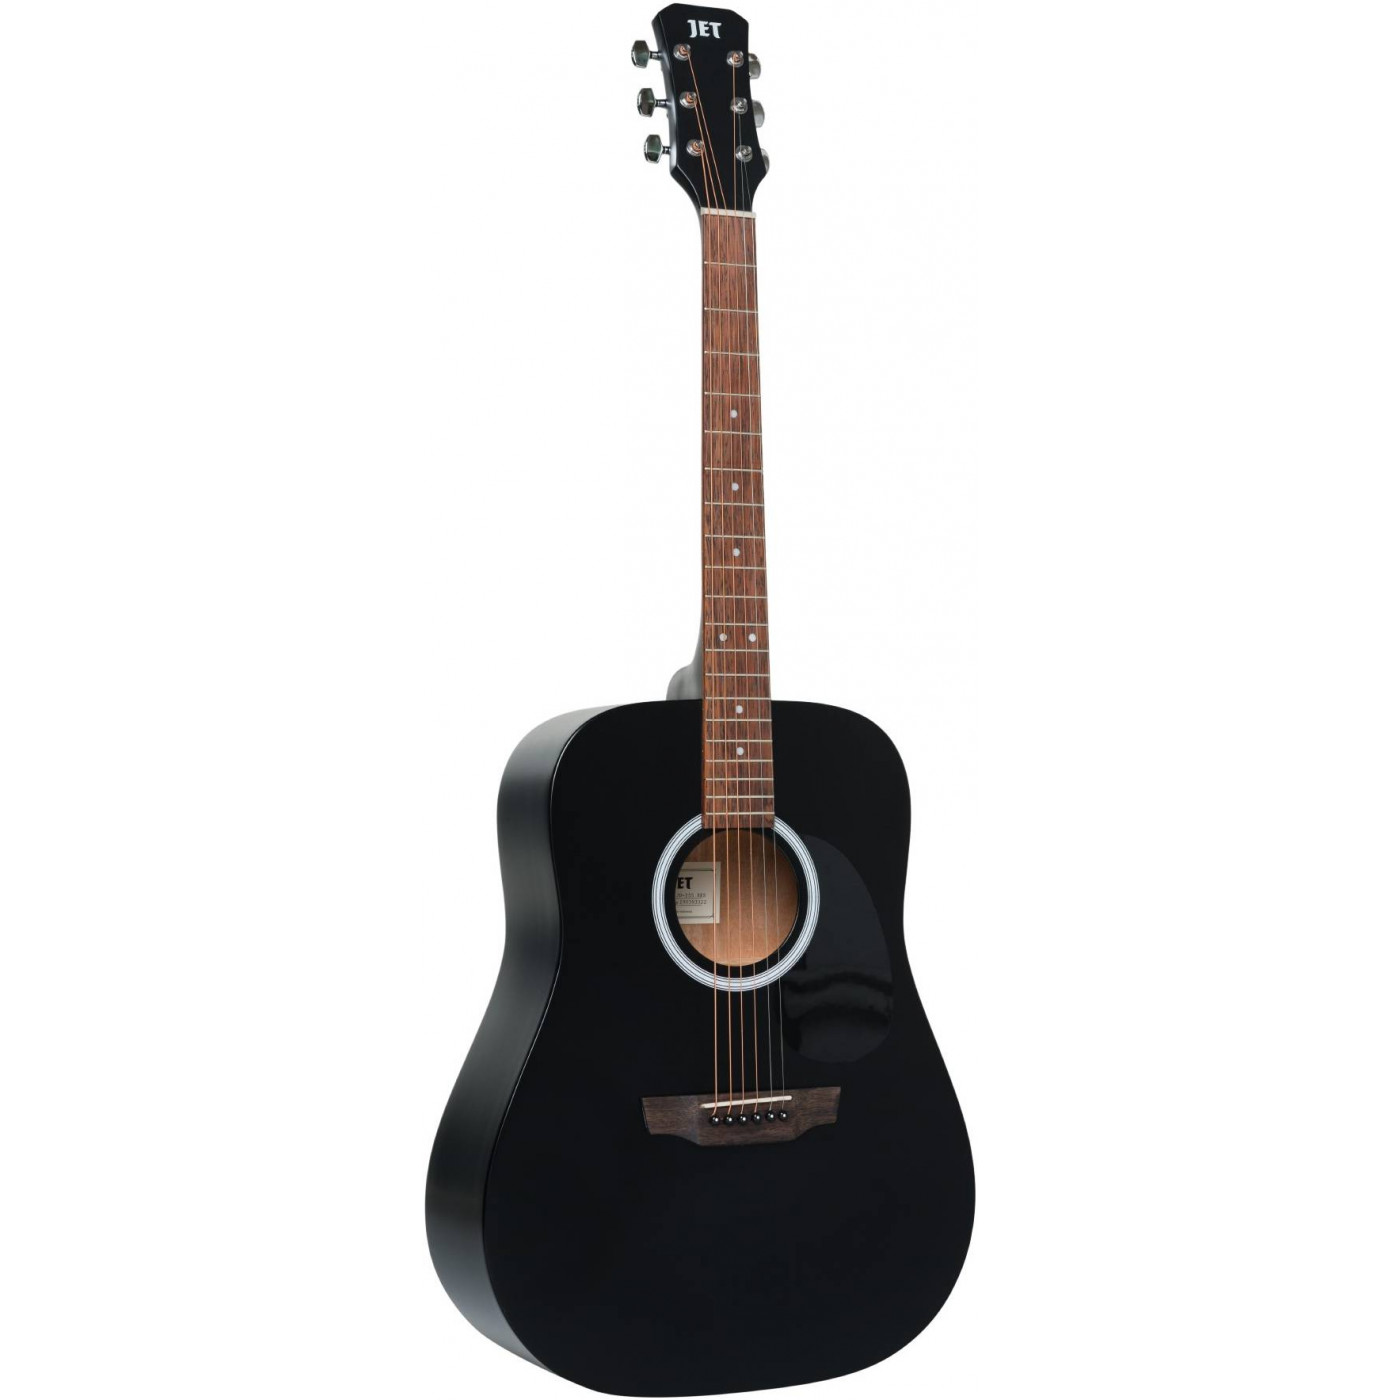 JET JD-255 BKS - акустическая гитара, верхняя дека - ель, корпус - красное дерево, цвет черный